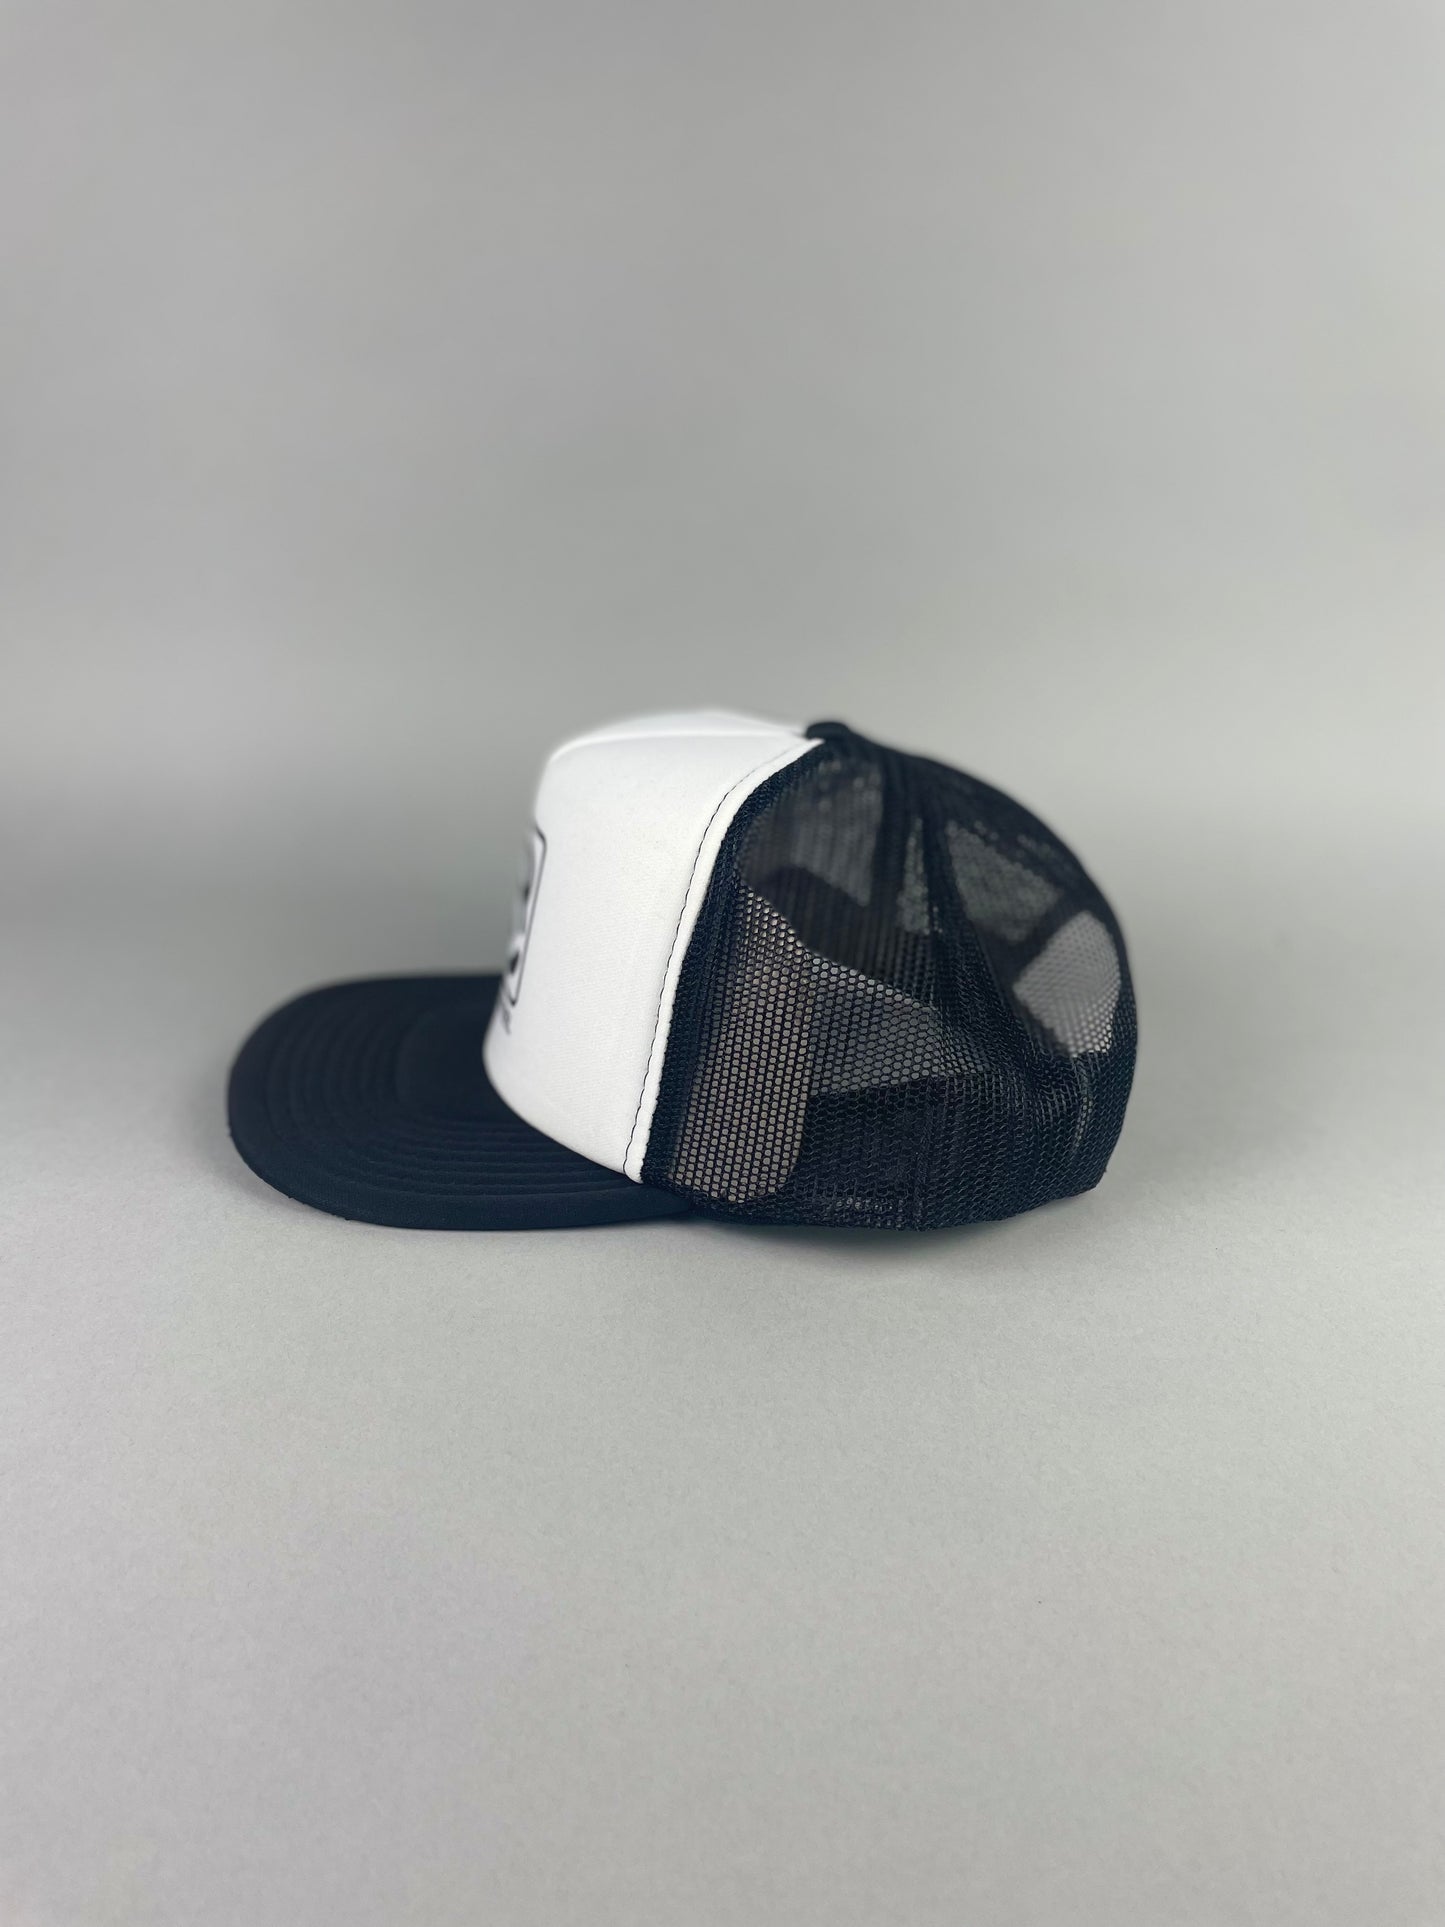 Blunt Steel “Volt” Trucker Hat